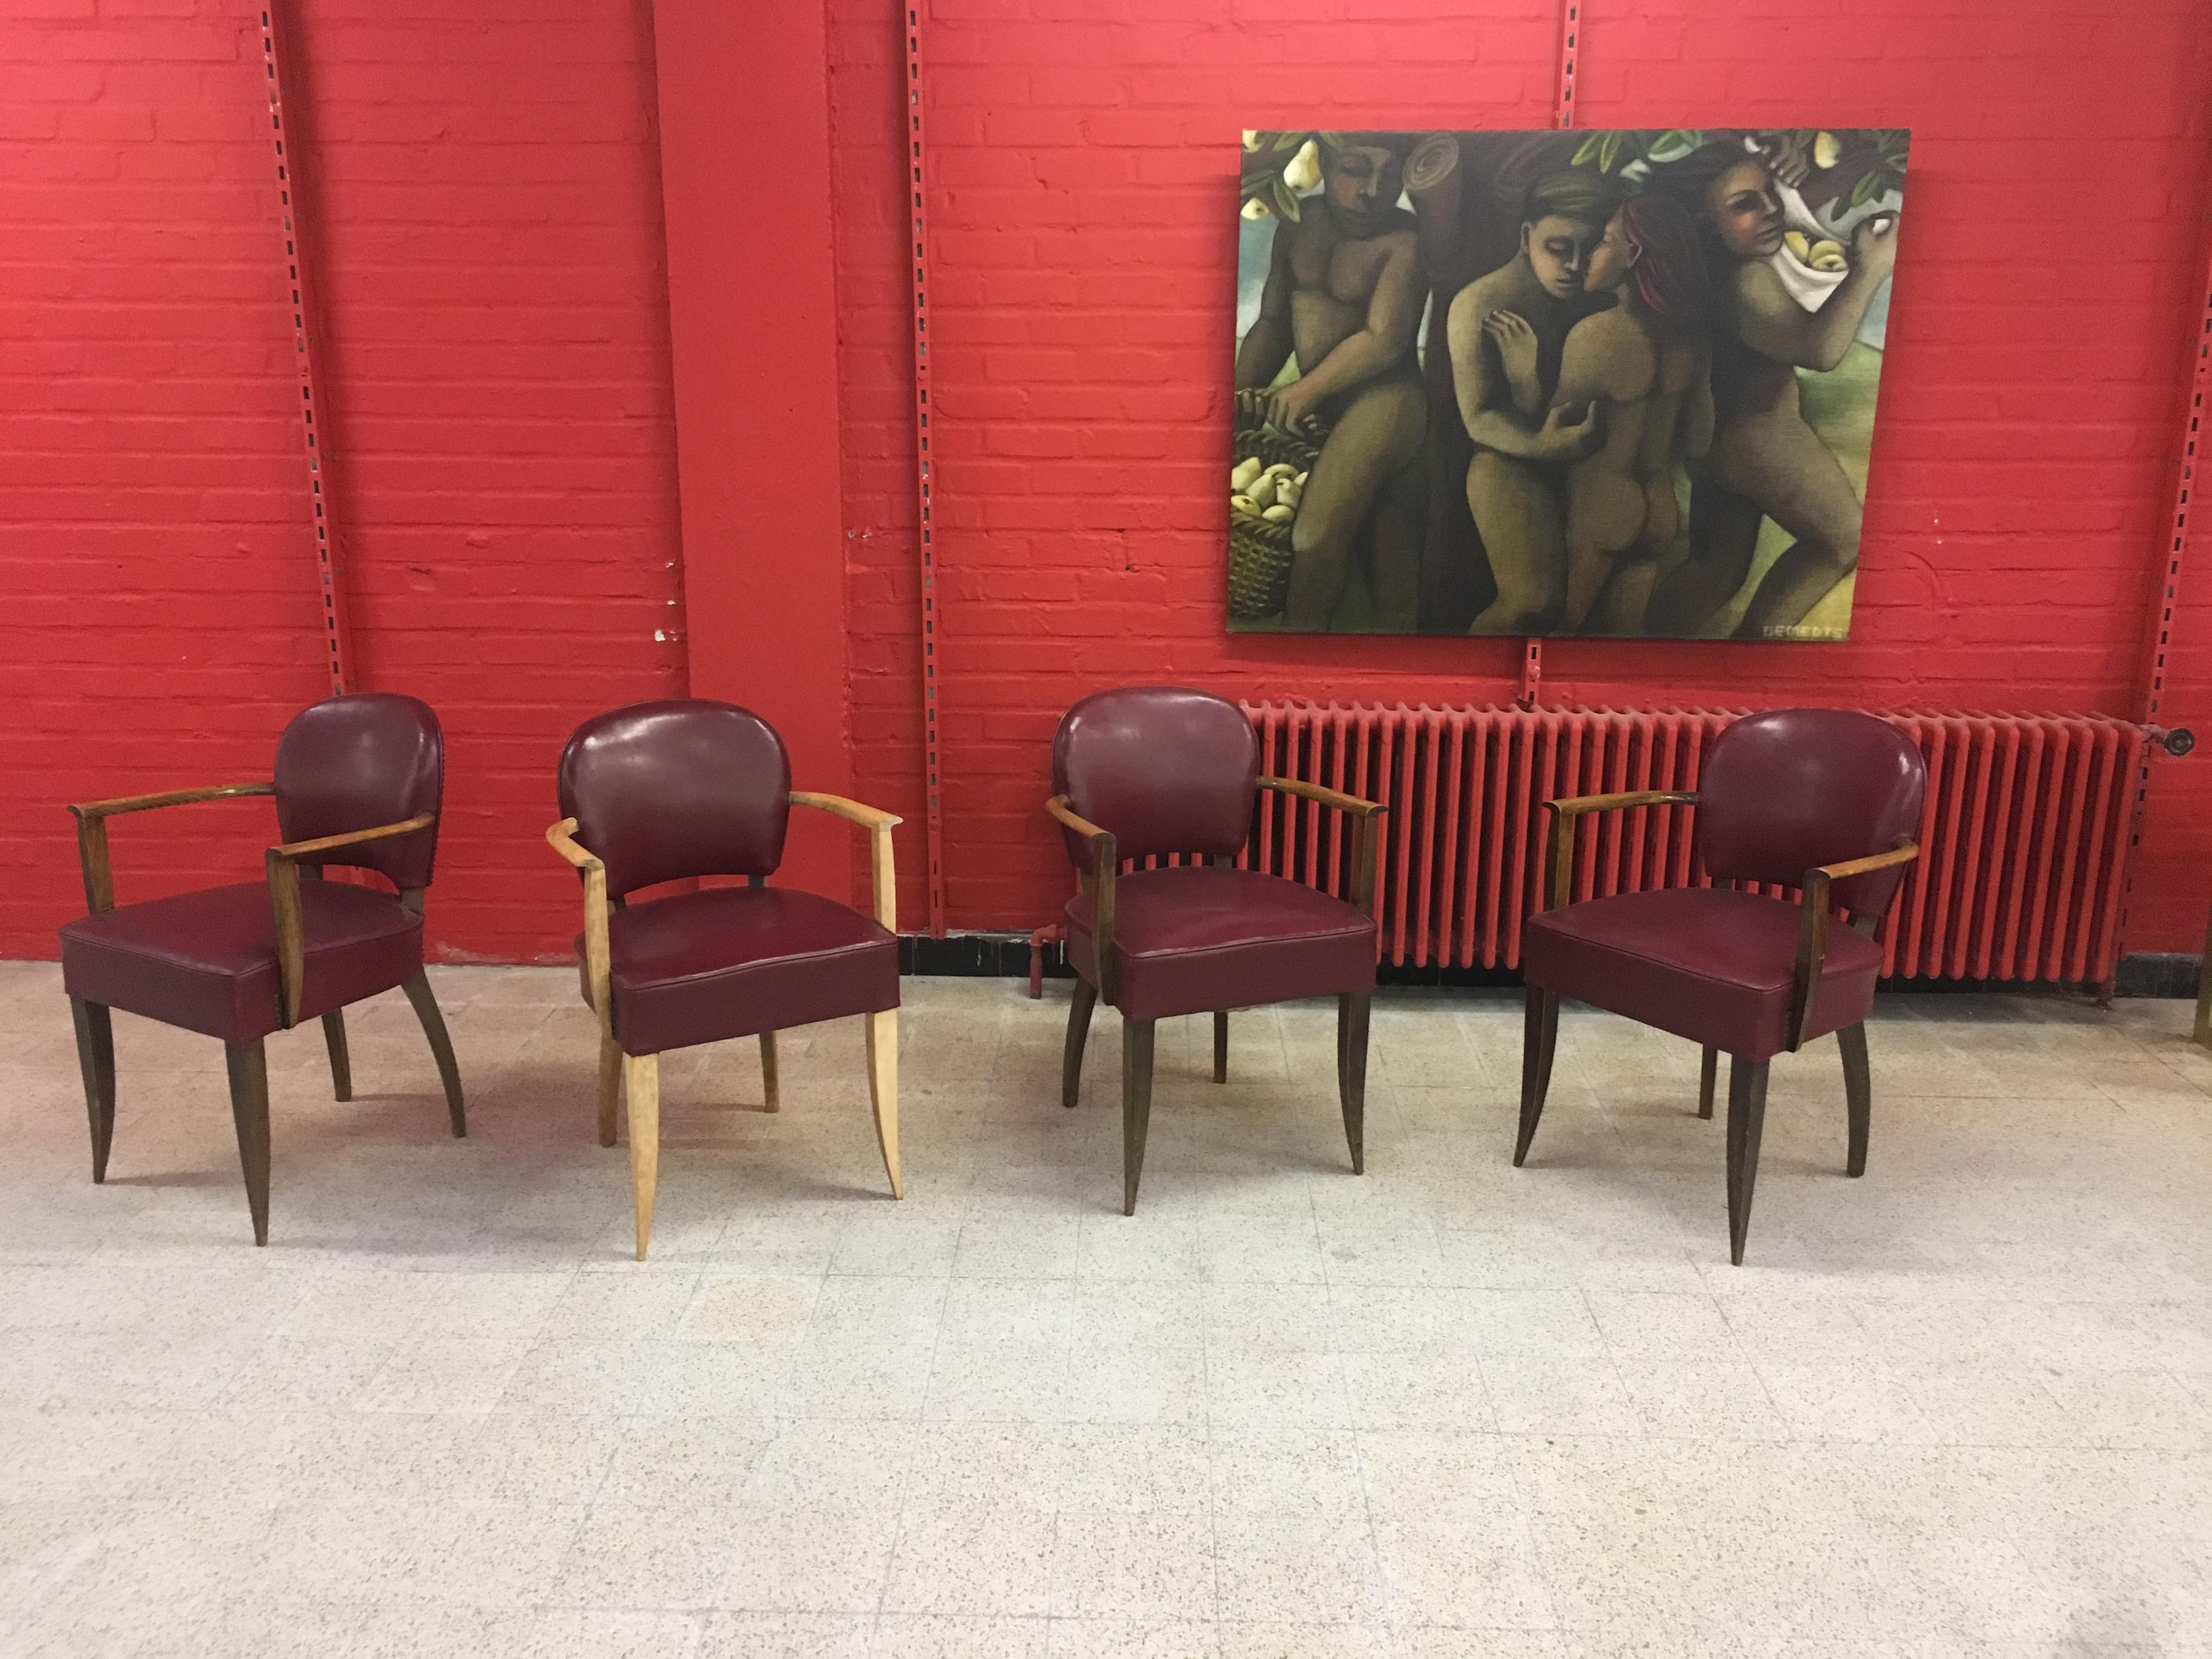 4 Art-Déco-Sessel im Stil von Jules Leleu, um 1930-1940
Buchenholzsessel, von dem 1 teilweise entkleidet wurde.
Rückenlehne und Sitz mit Kunstleder bezogen, in gutem Zustand, aber mit kleinen Mängeln.